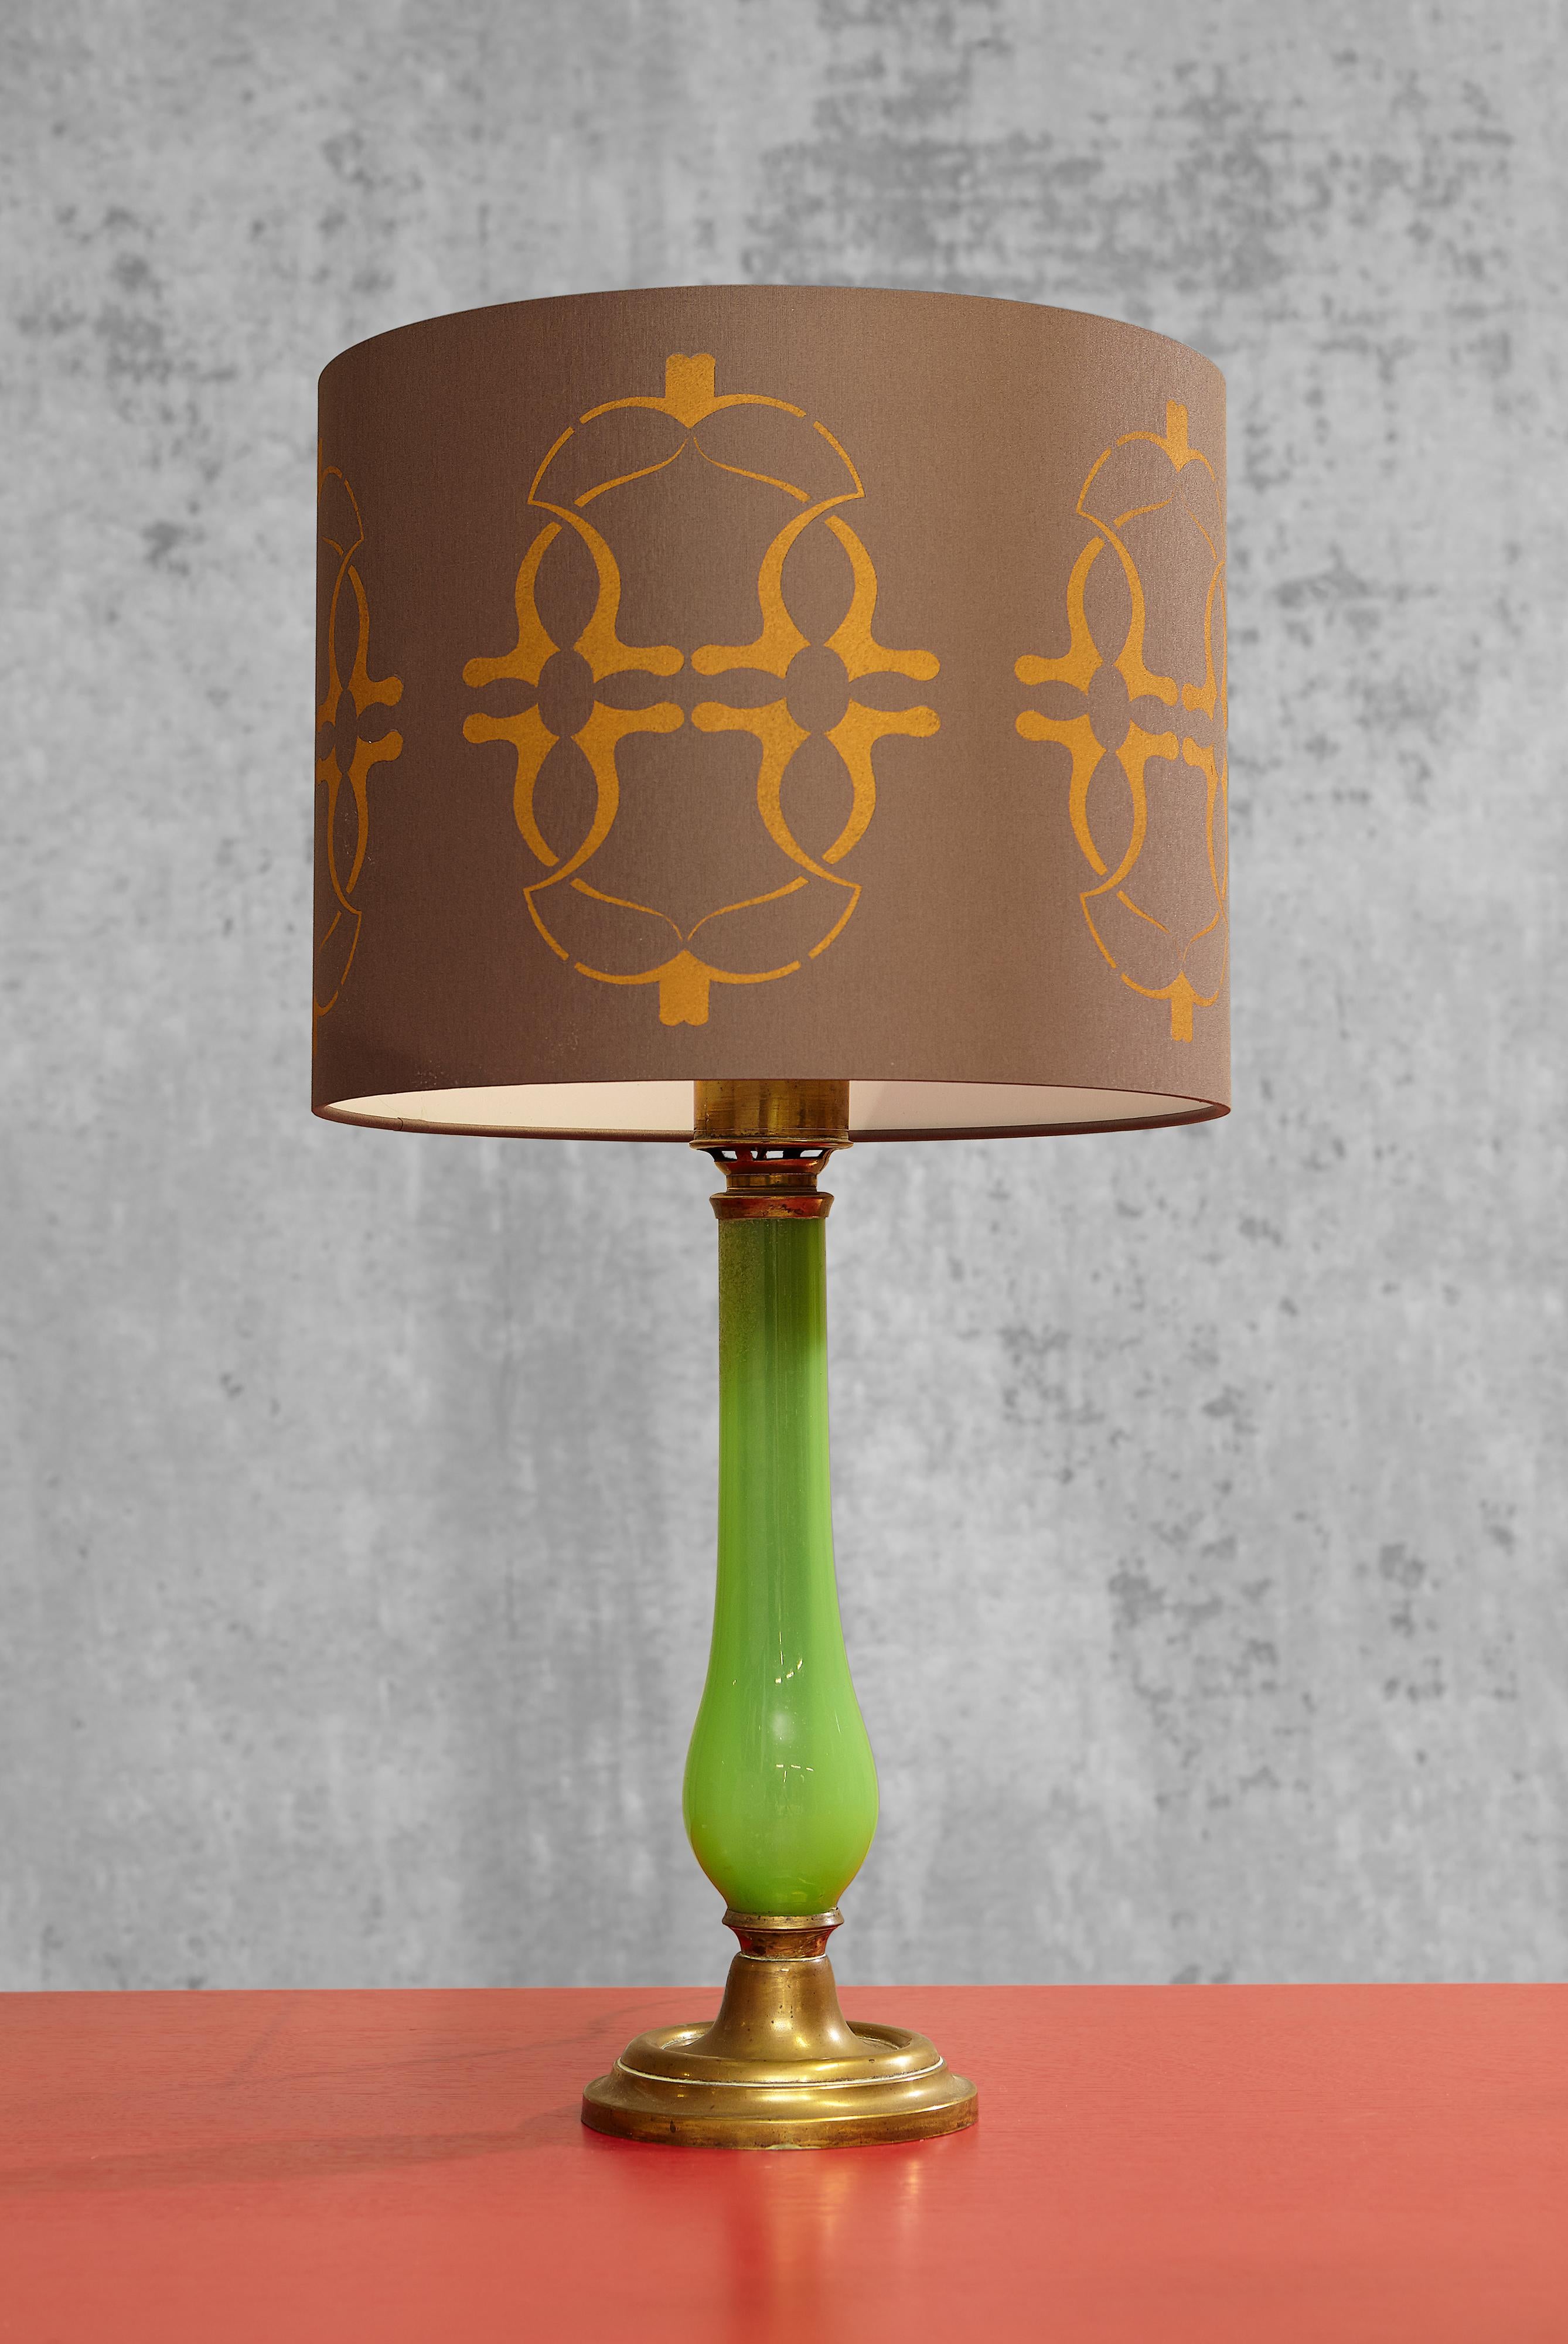 Élégante lampe de table en verre opalin vert sur une base ronde et profilée avec un rebord profilé.

L'abat-jour de Brinkman Collections peut être acquis séparément, mais n'est pas inclus dans le prix.  
